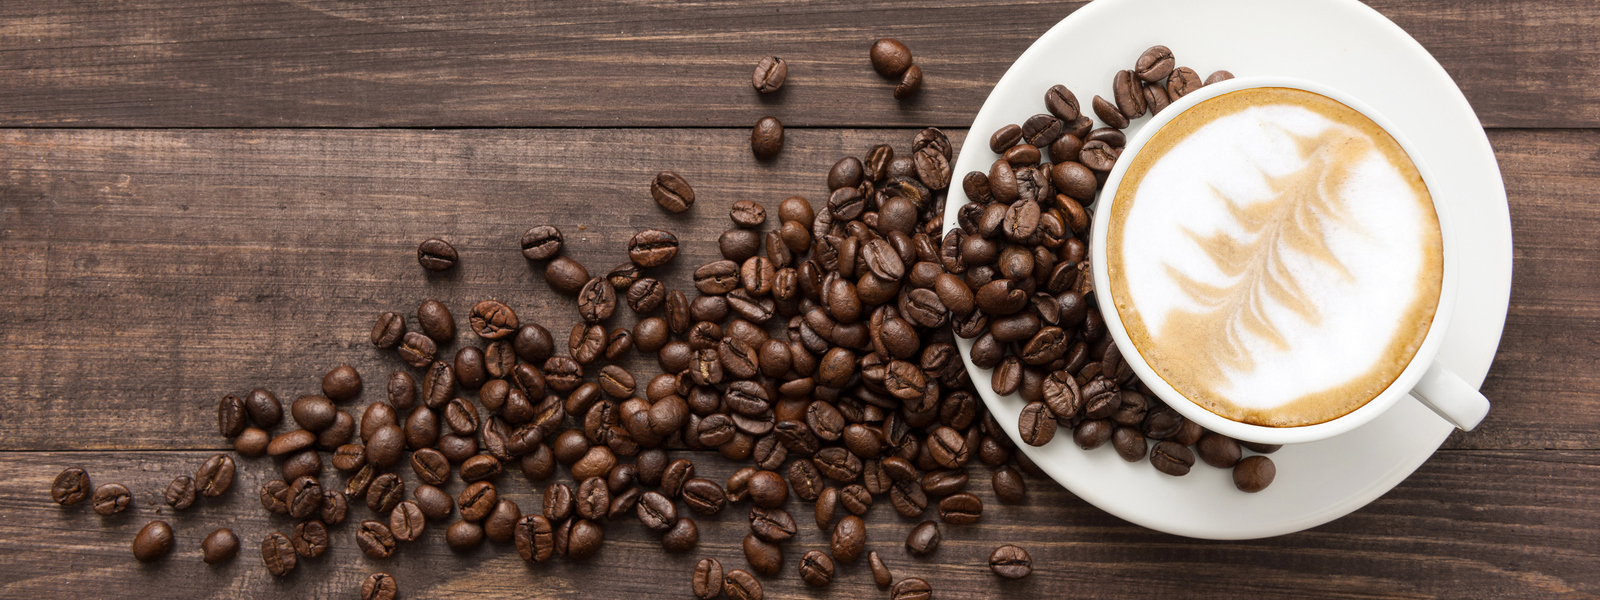 Tipy pro milovníky kávy: Jak připravit lahodnou kávu v pohodlí domova?